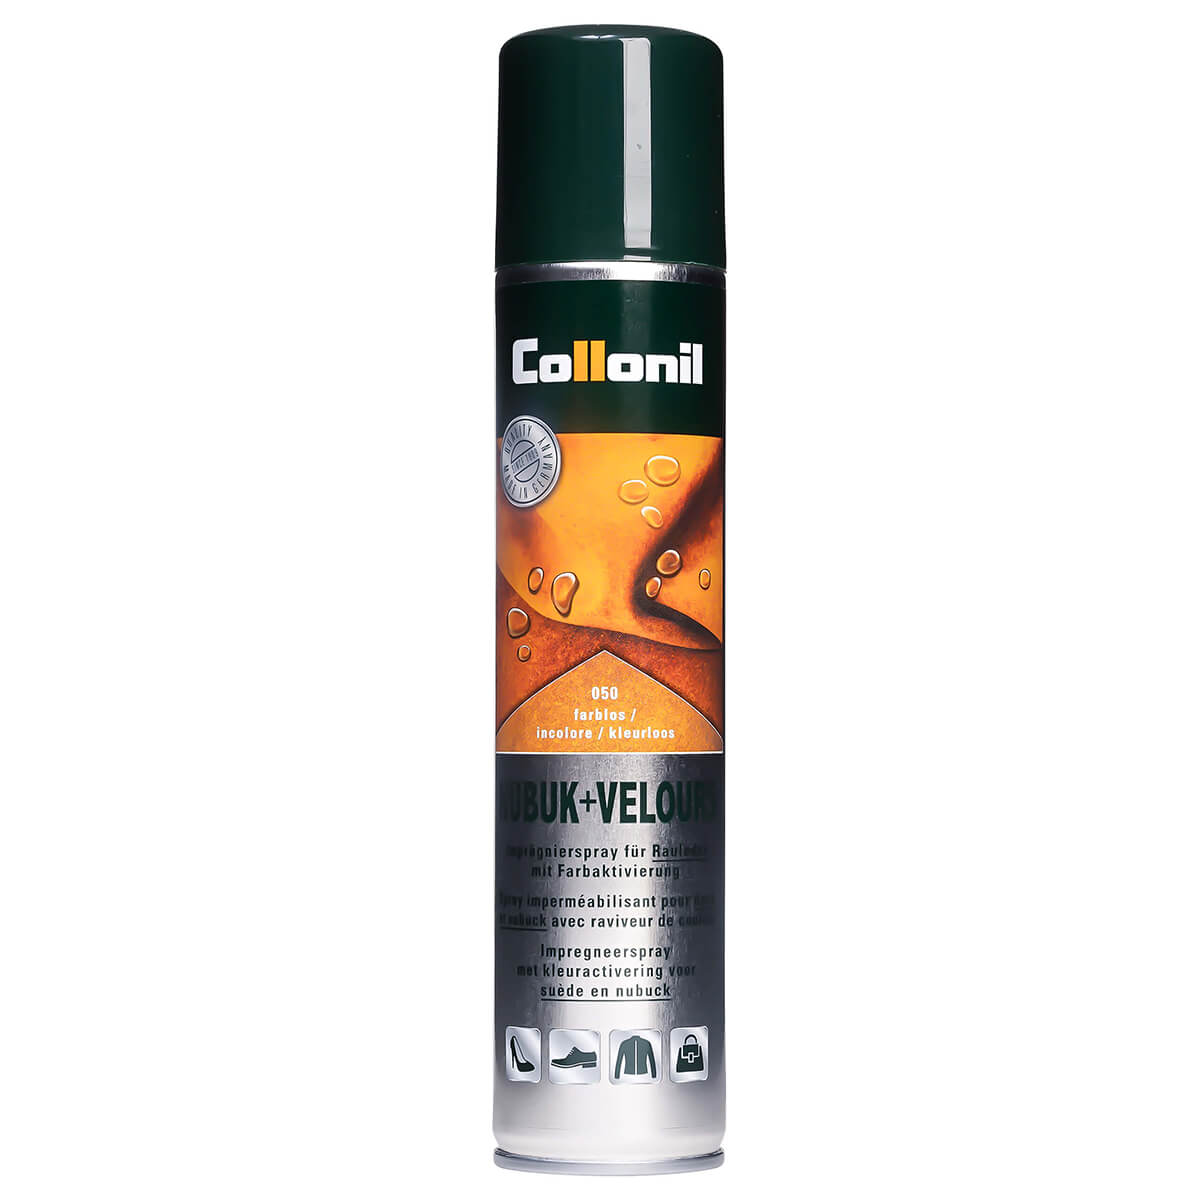 Gaseous Contempt Refinery spray impermeabilizeaza si protejeaza pielea nabuk si pielea intoarsa.